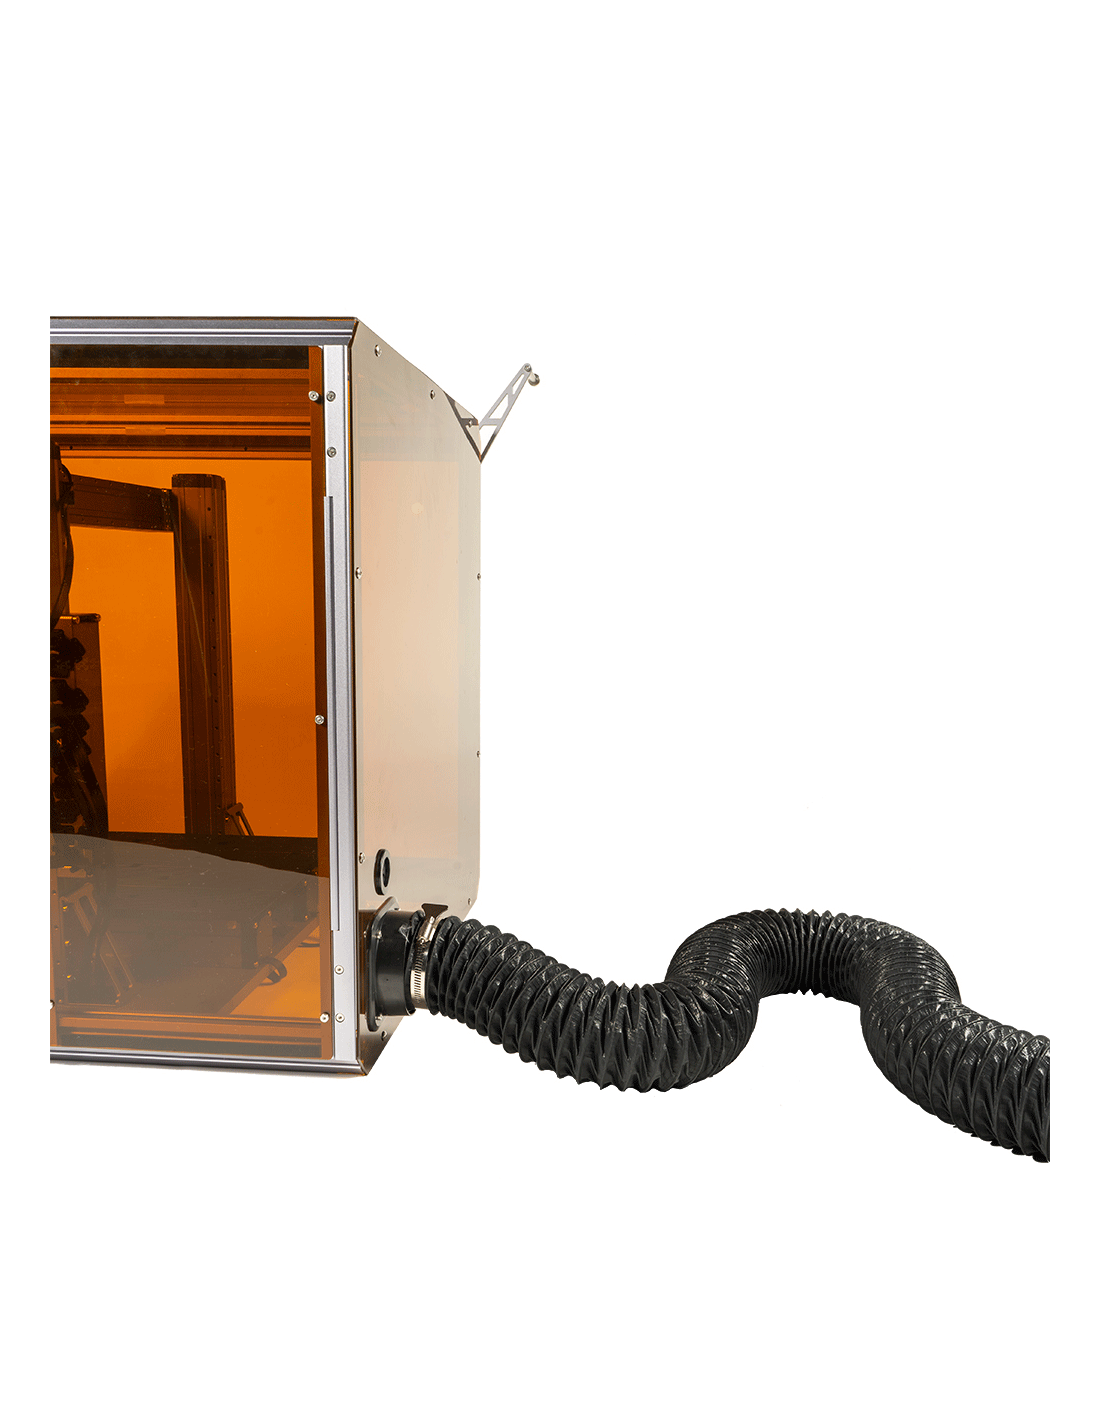 Snapmaker 2.0 3-i-1 3D-printer med A250T-kabinet Forbedret version